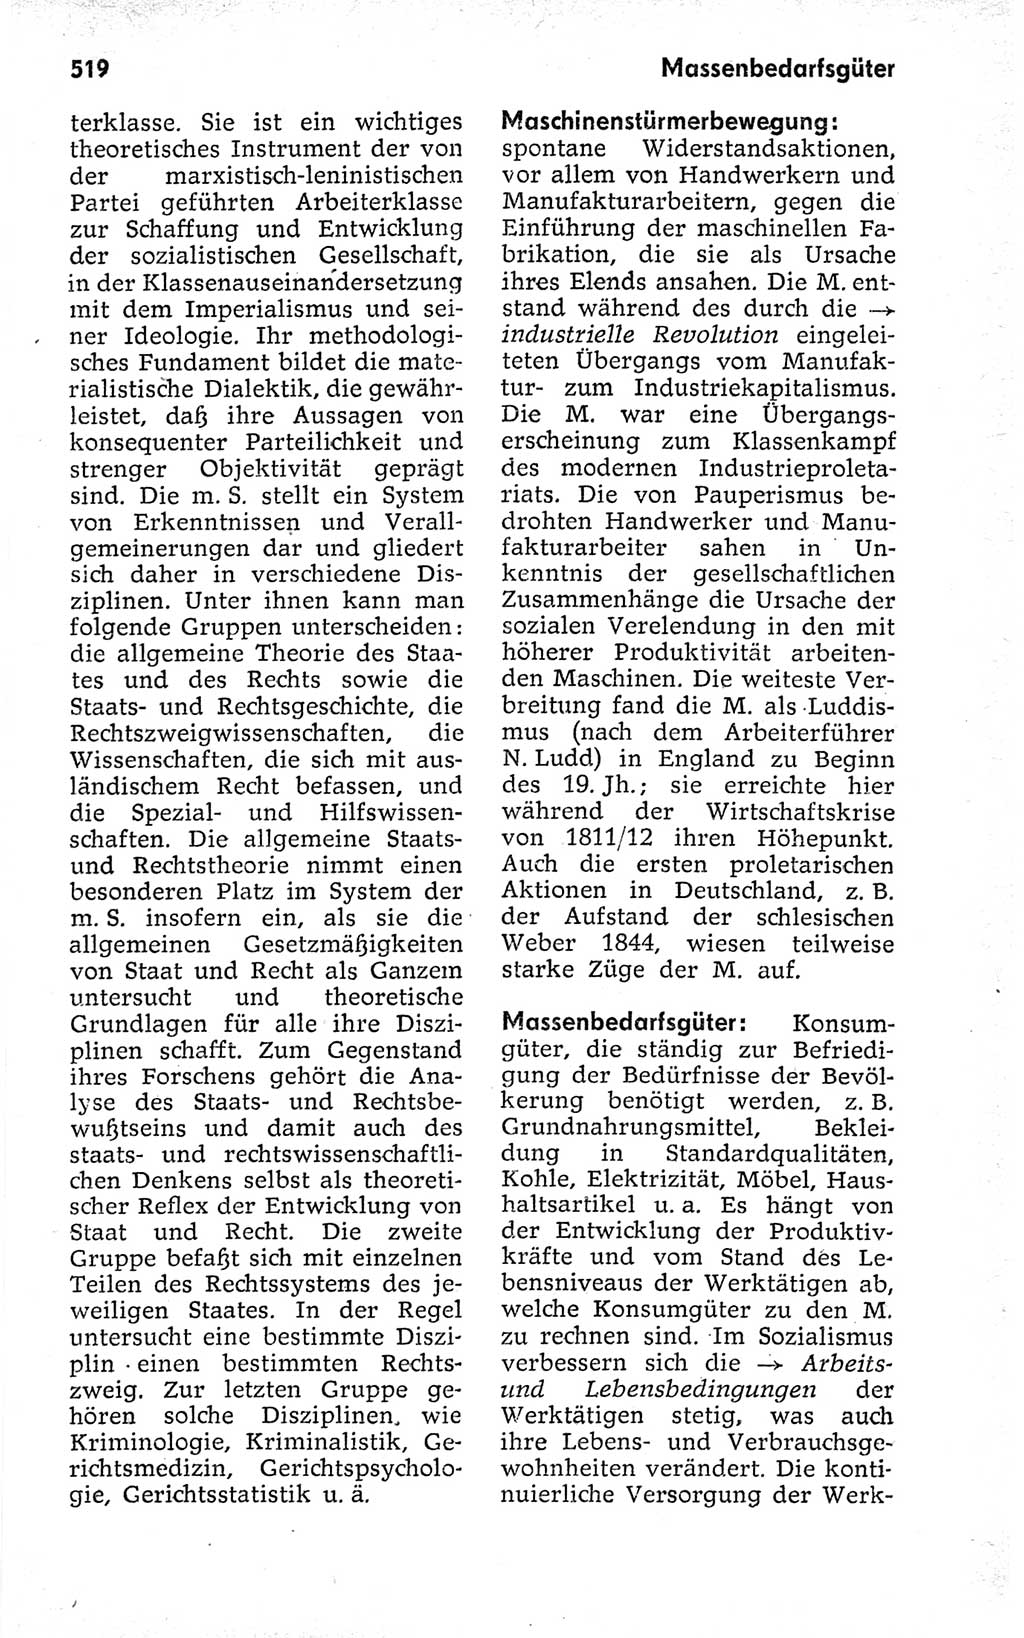 Kleines politisches Wörterbuch [Deutsche Demokratische Republik (DDR)] 1973, Seite 519 (Kl. pol. Wb. DDR 1973, S. 519)